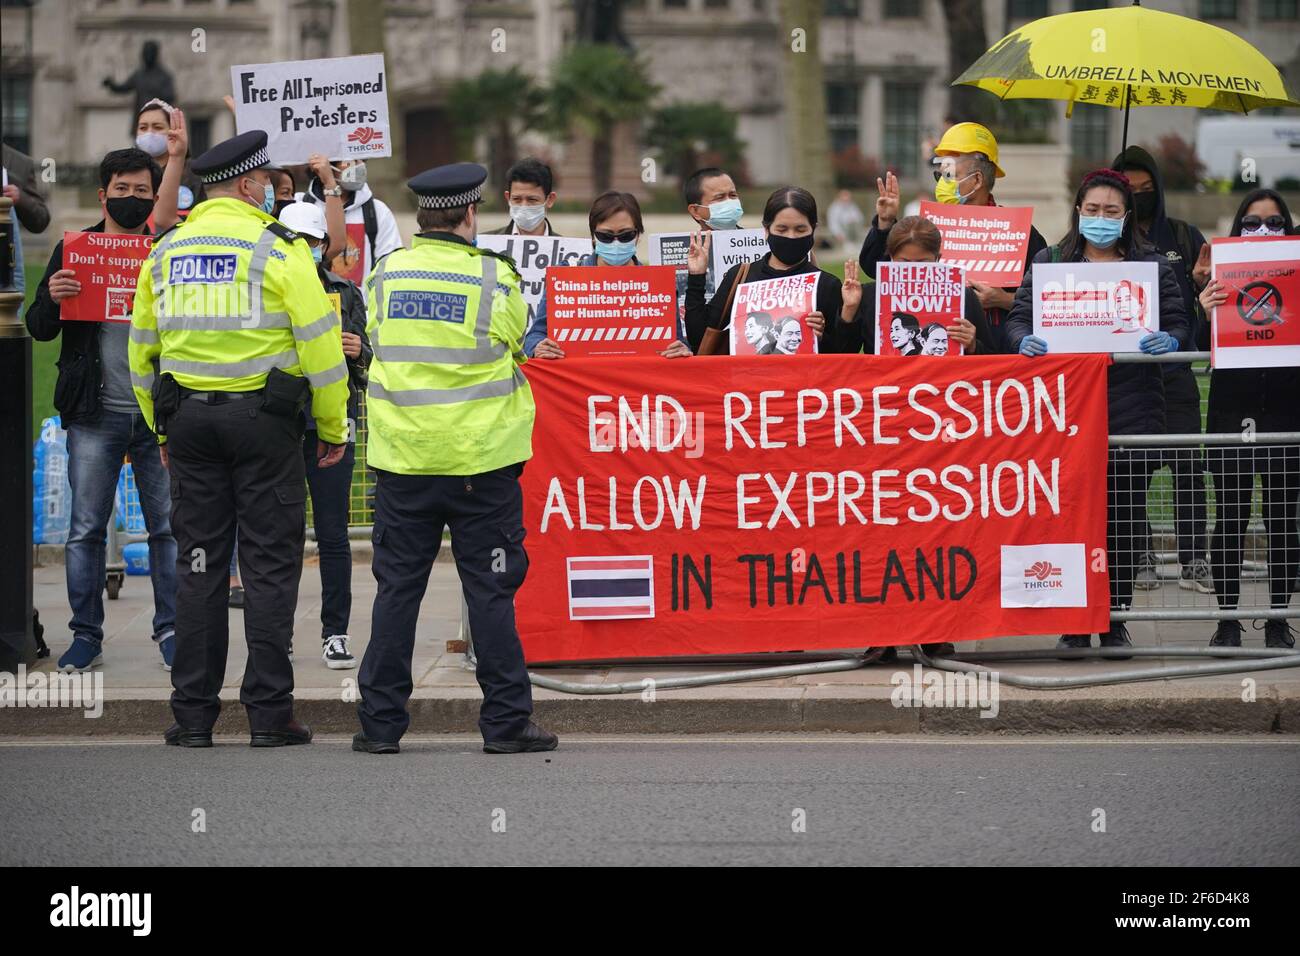 Des manifestants se sont rassemblés devant le Parlement à Westminster, dans le centre de Londres, pour manifester contre le coup d'État du 1er février au Myanmar qui a renversé le gouvernement élu d'Aung San Suu Kyi. Date de la photo: Mercredi 31 mars 2021. Banque D'Images